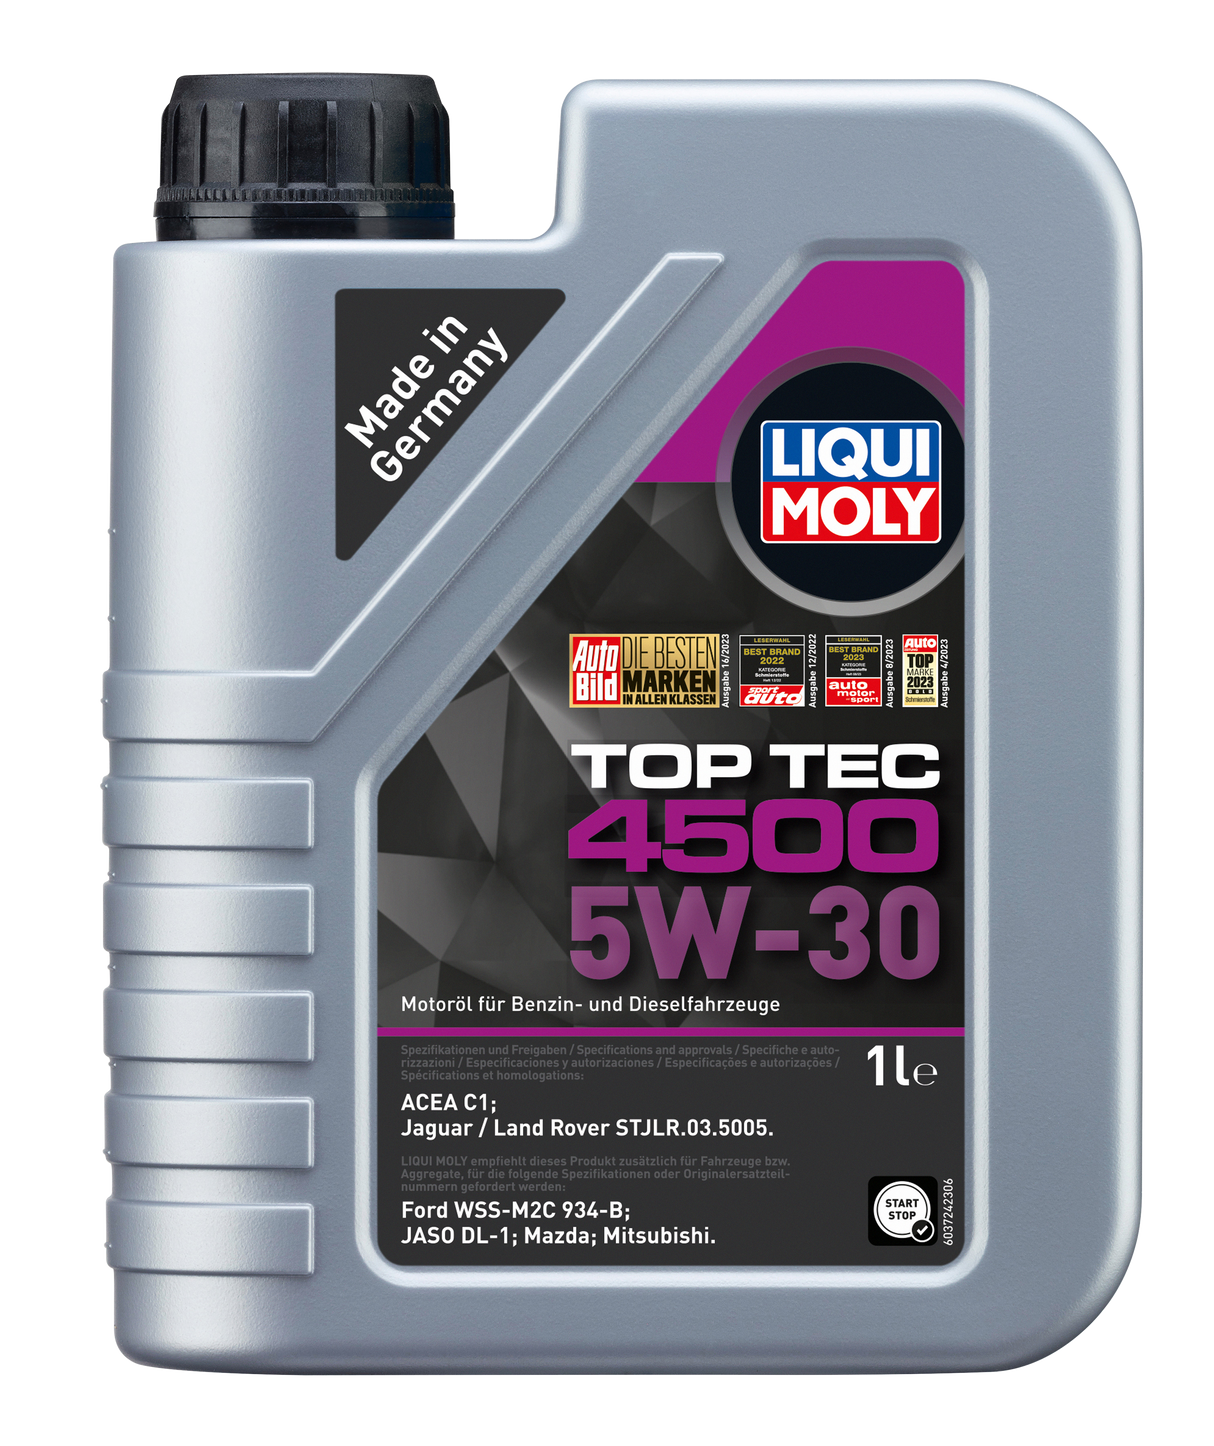 Liqui Moly Top Tec 4500 5W-30